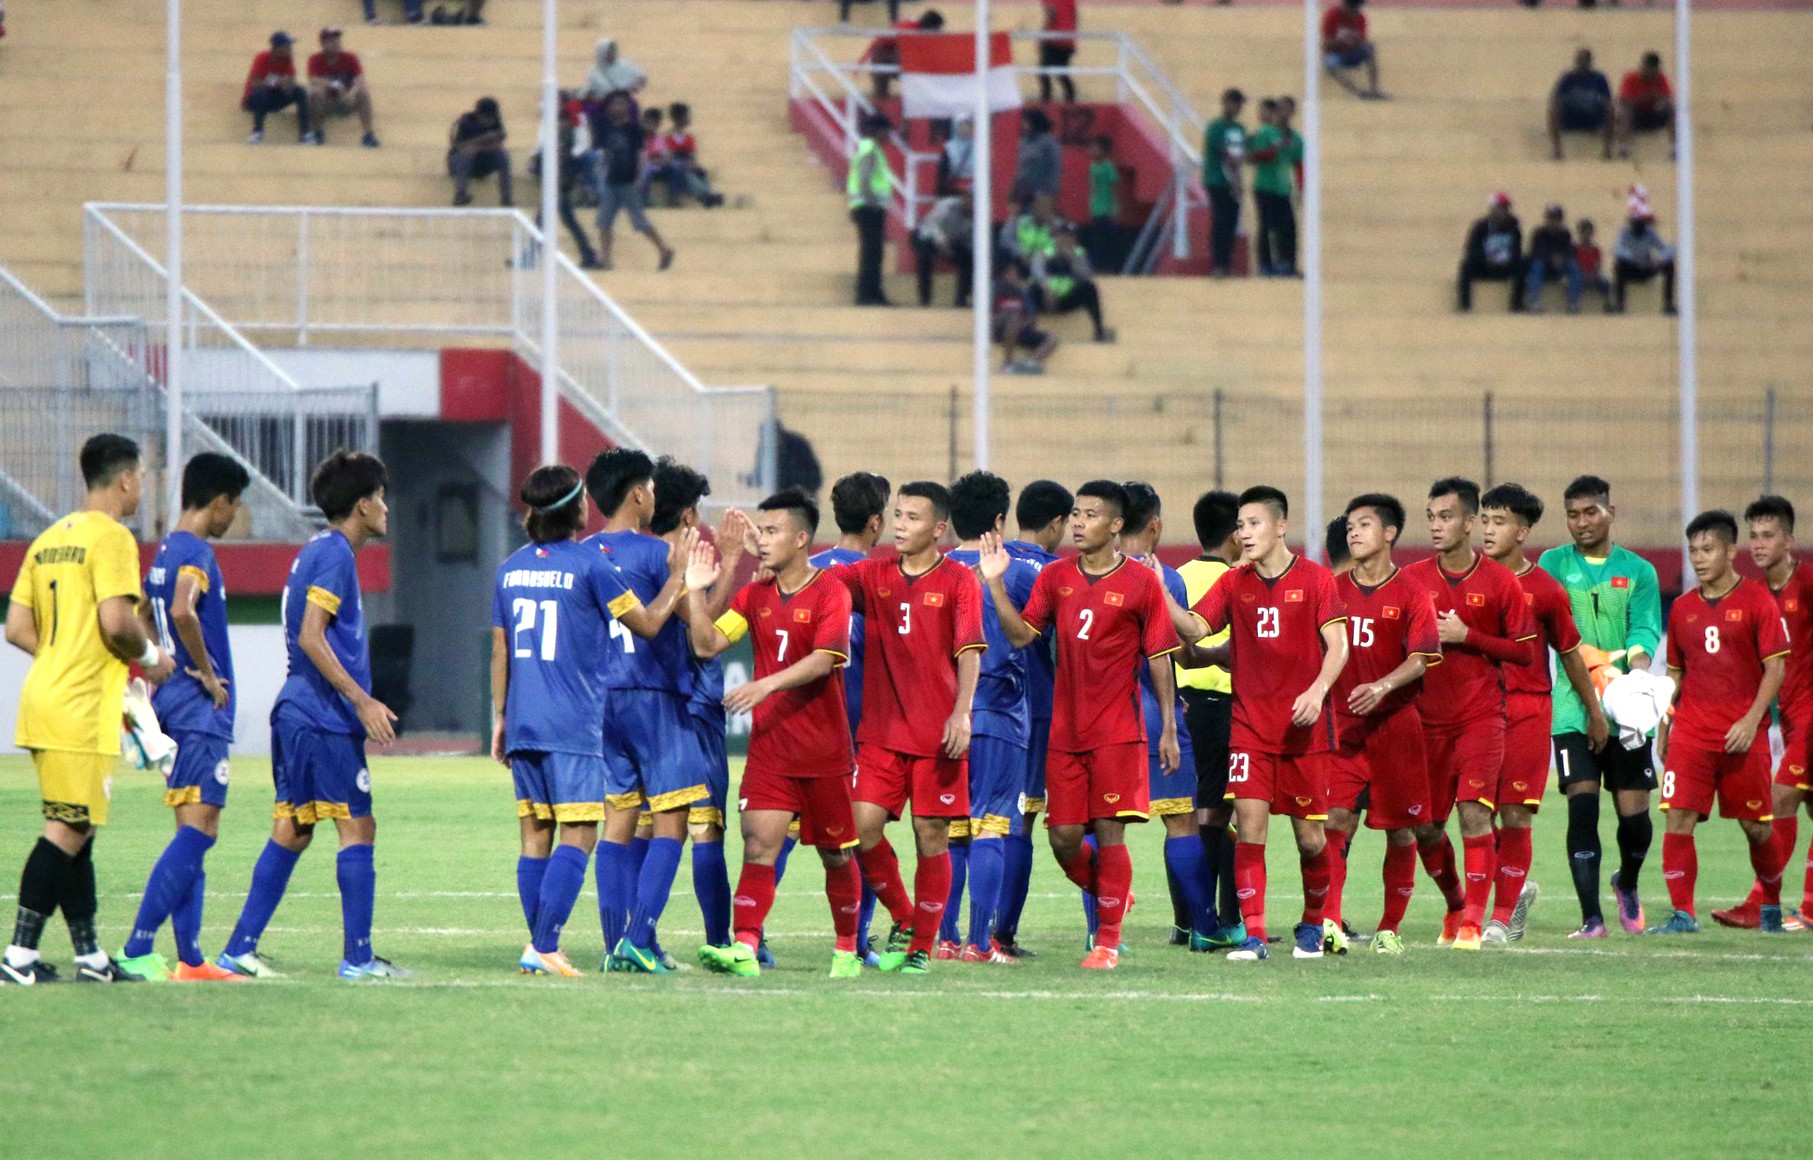 Thủ môn xuất sắc đẩy penalty, U19 Việt Nam vượt Thái Lan ở bảng xếp hạng AFF U19  - Ảnh 1.